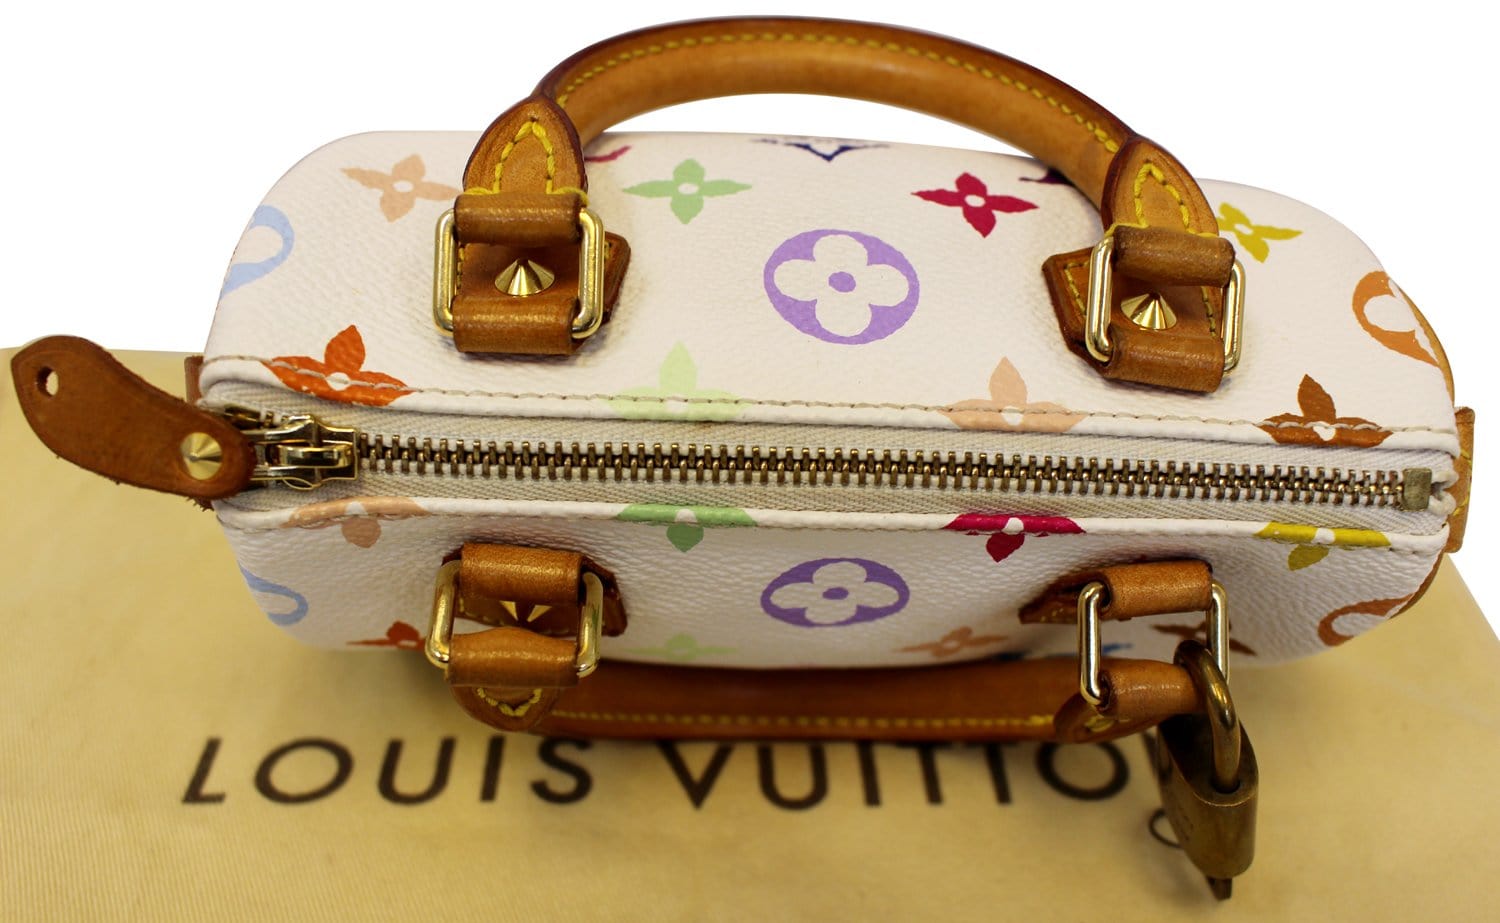 Louis Vuitton Discontinues Multi-Colour Monogram Collection